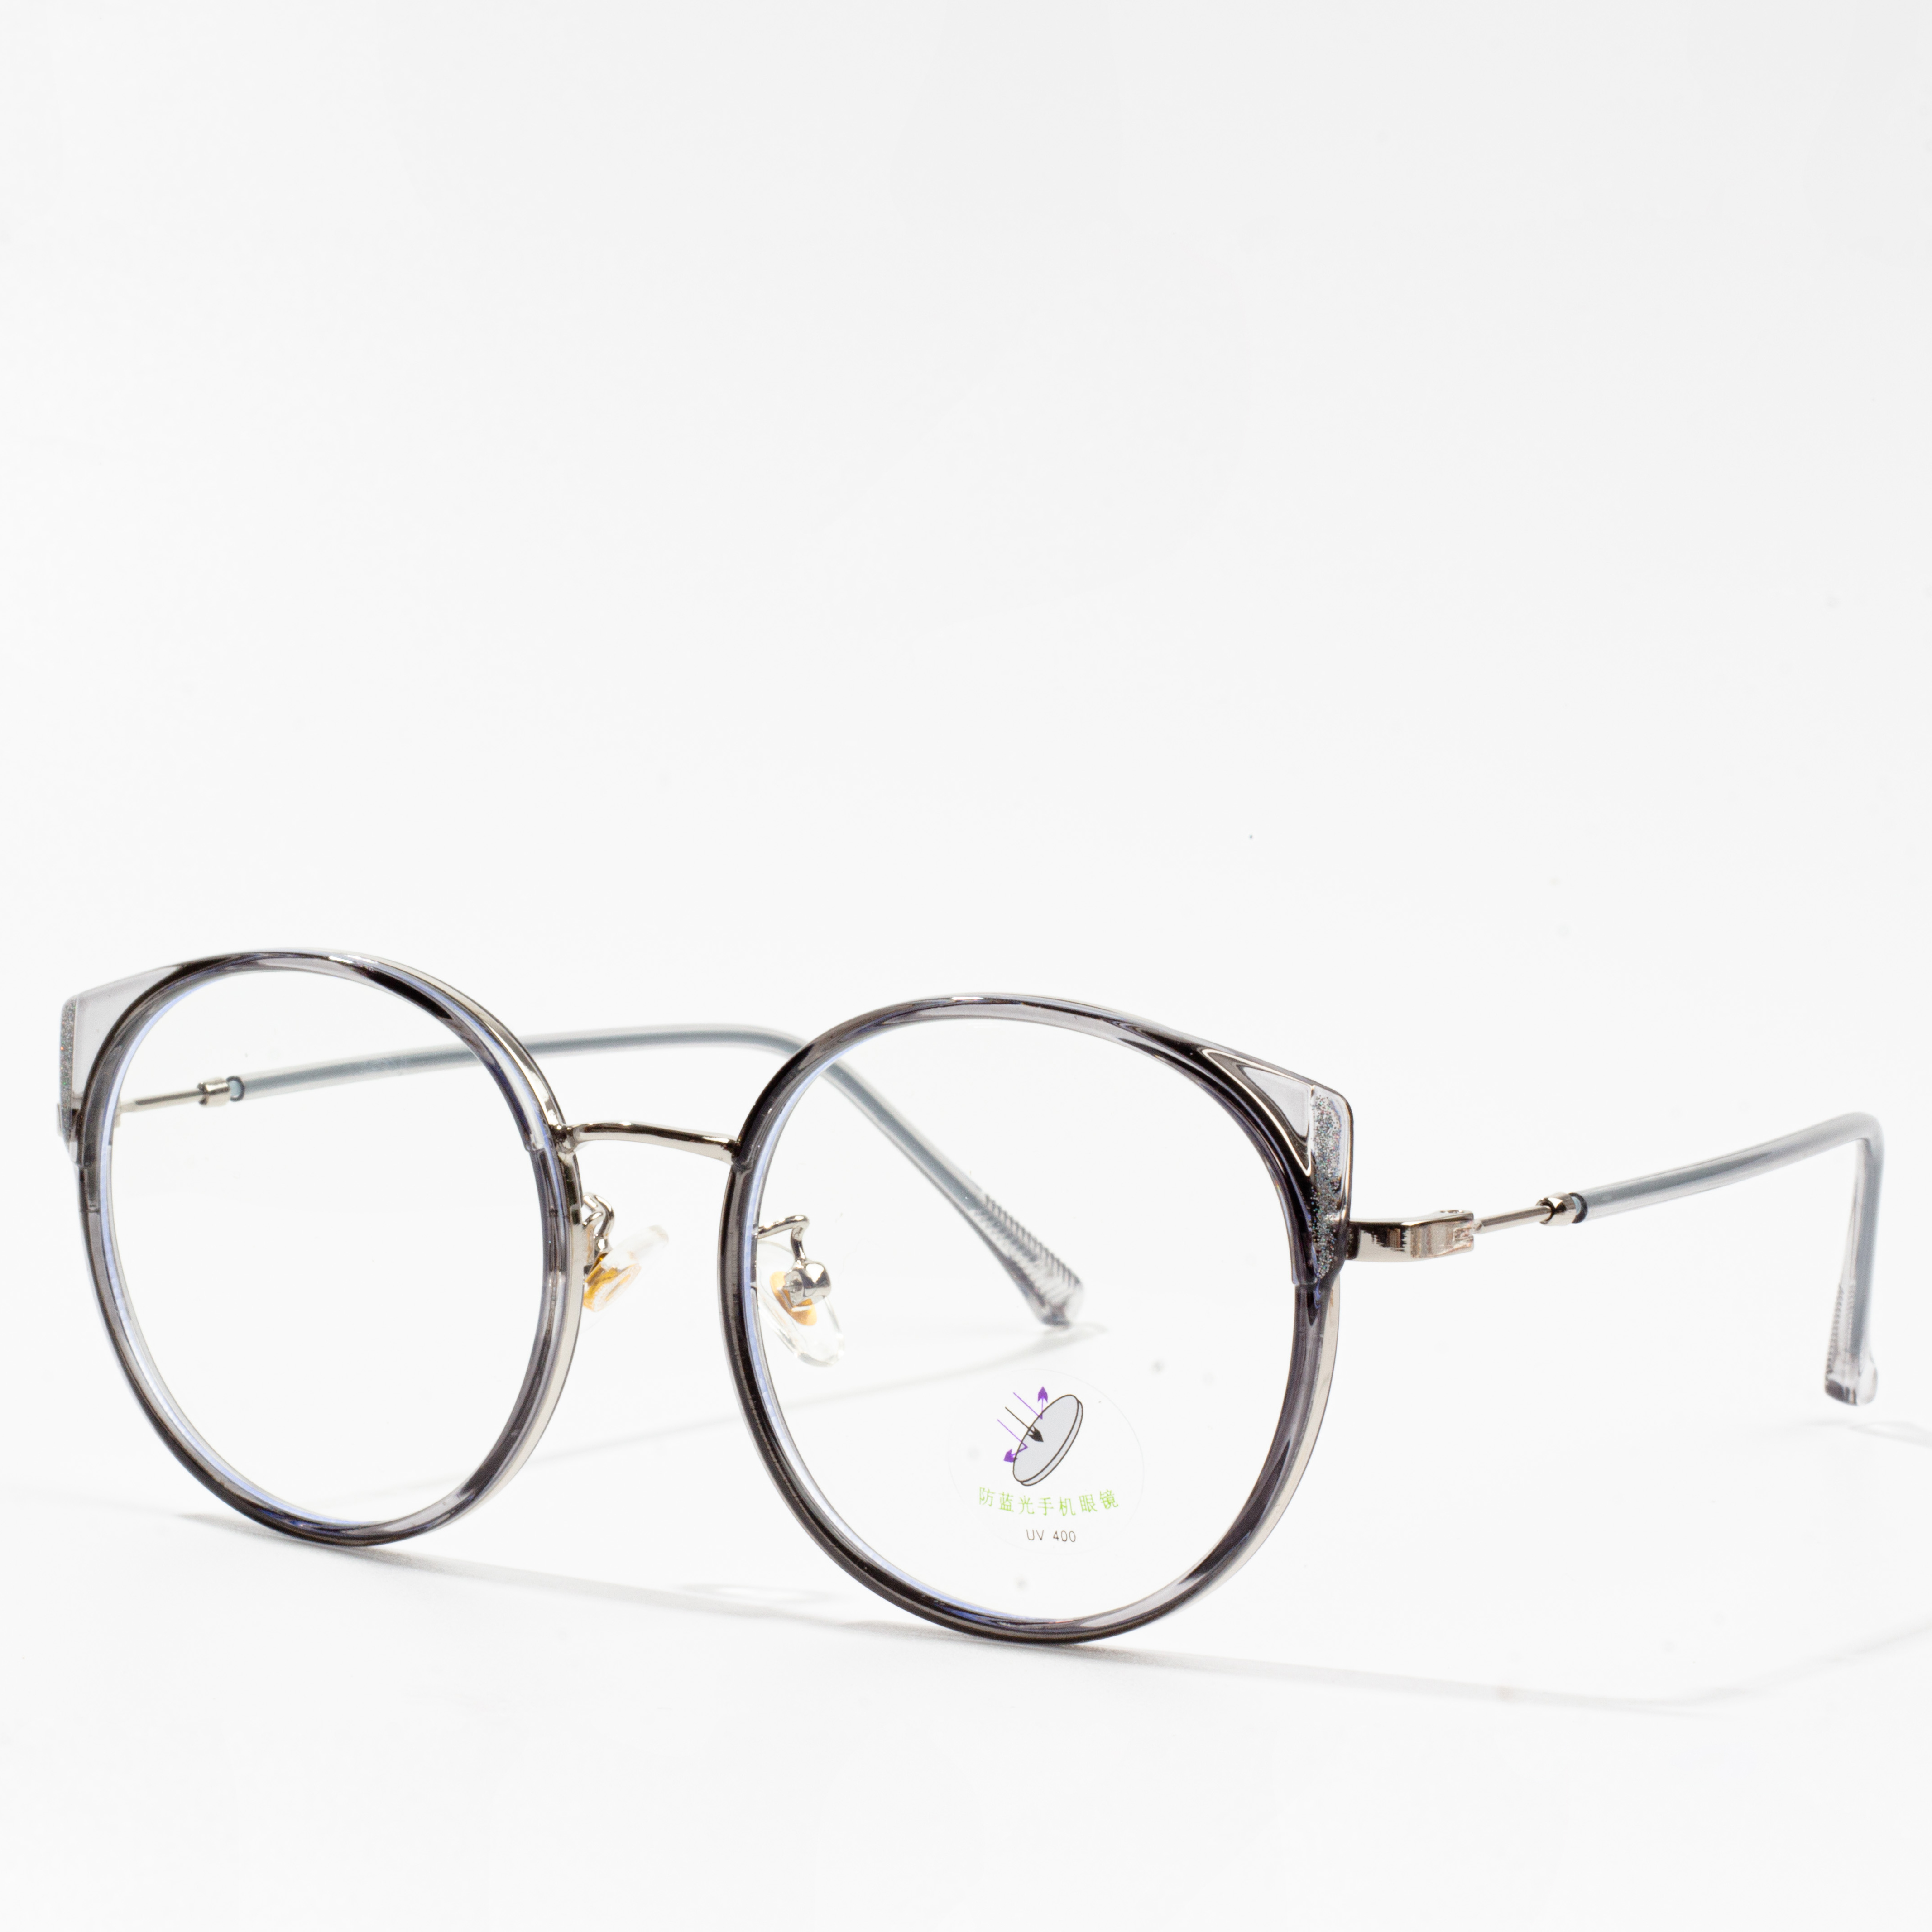 fframiau eyeglass cath